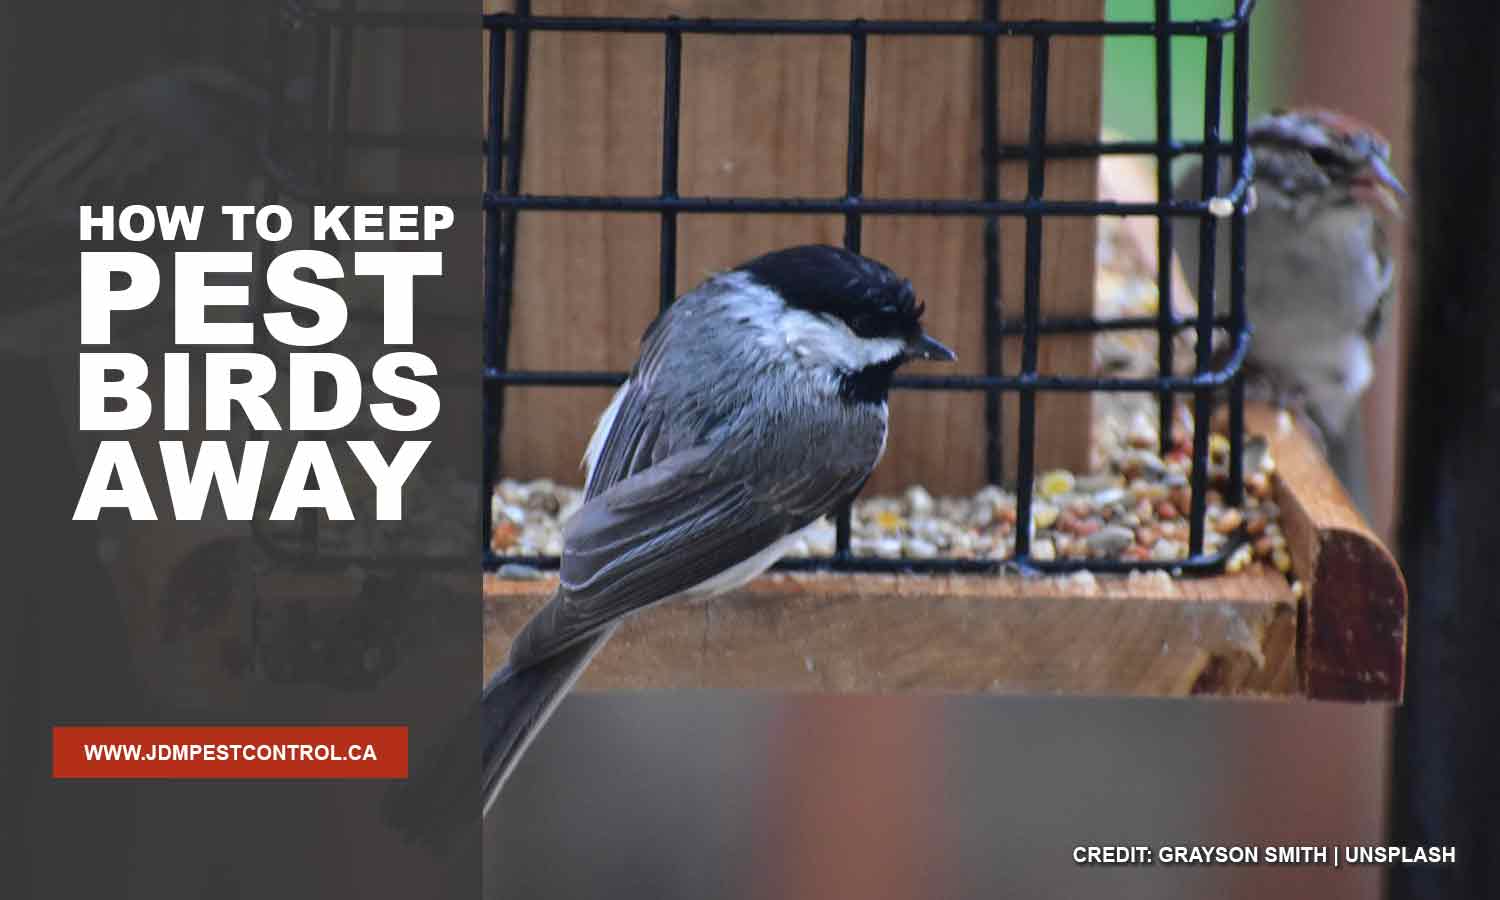 How to Keep Pest Birds Away